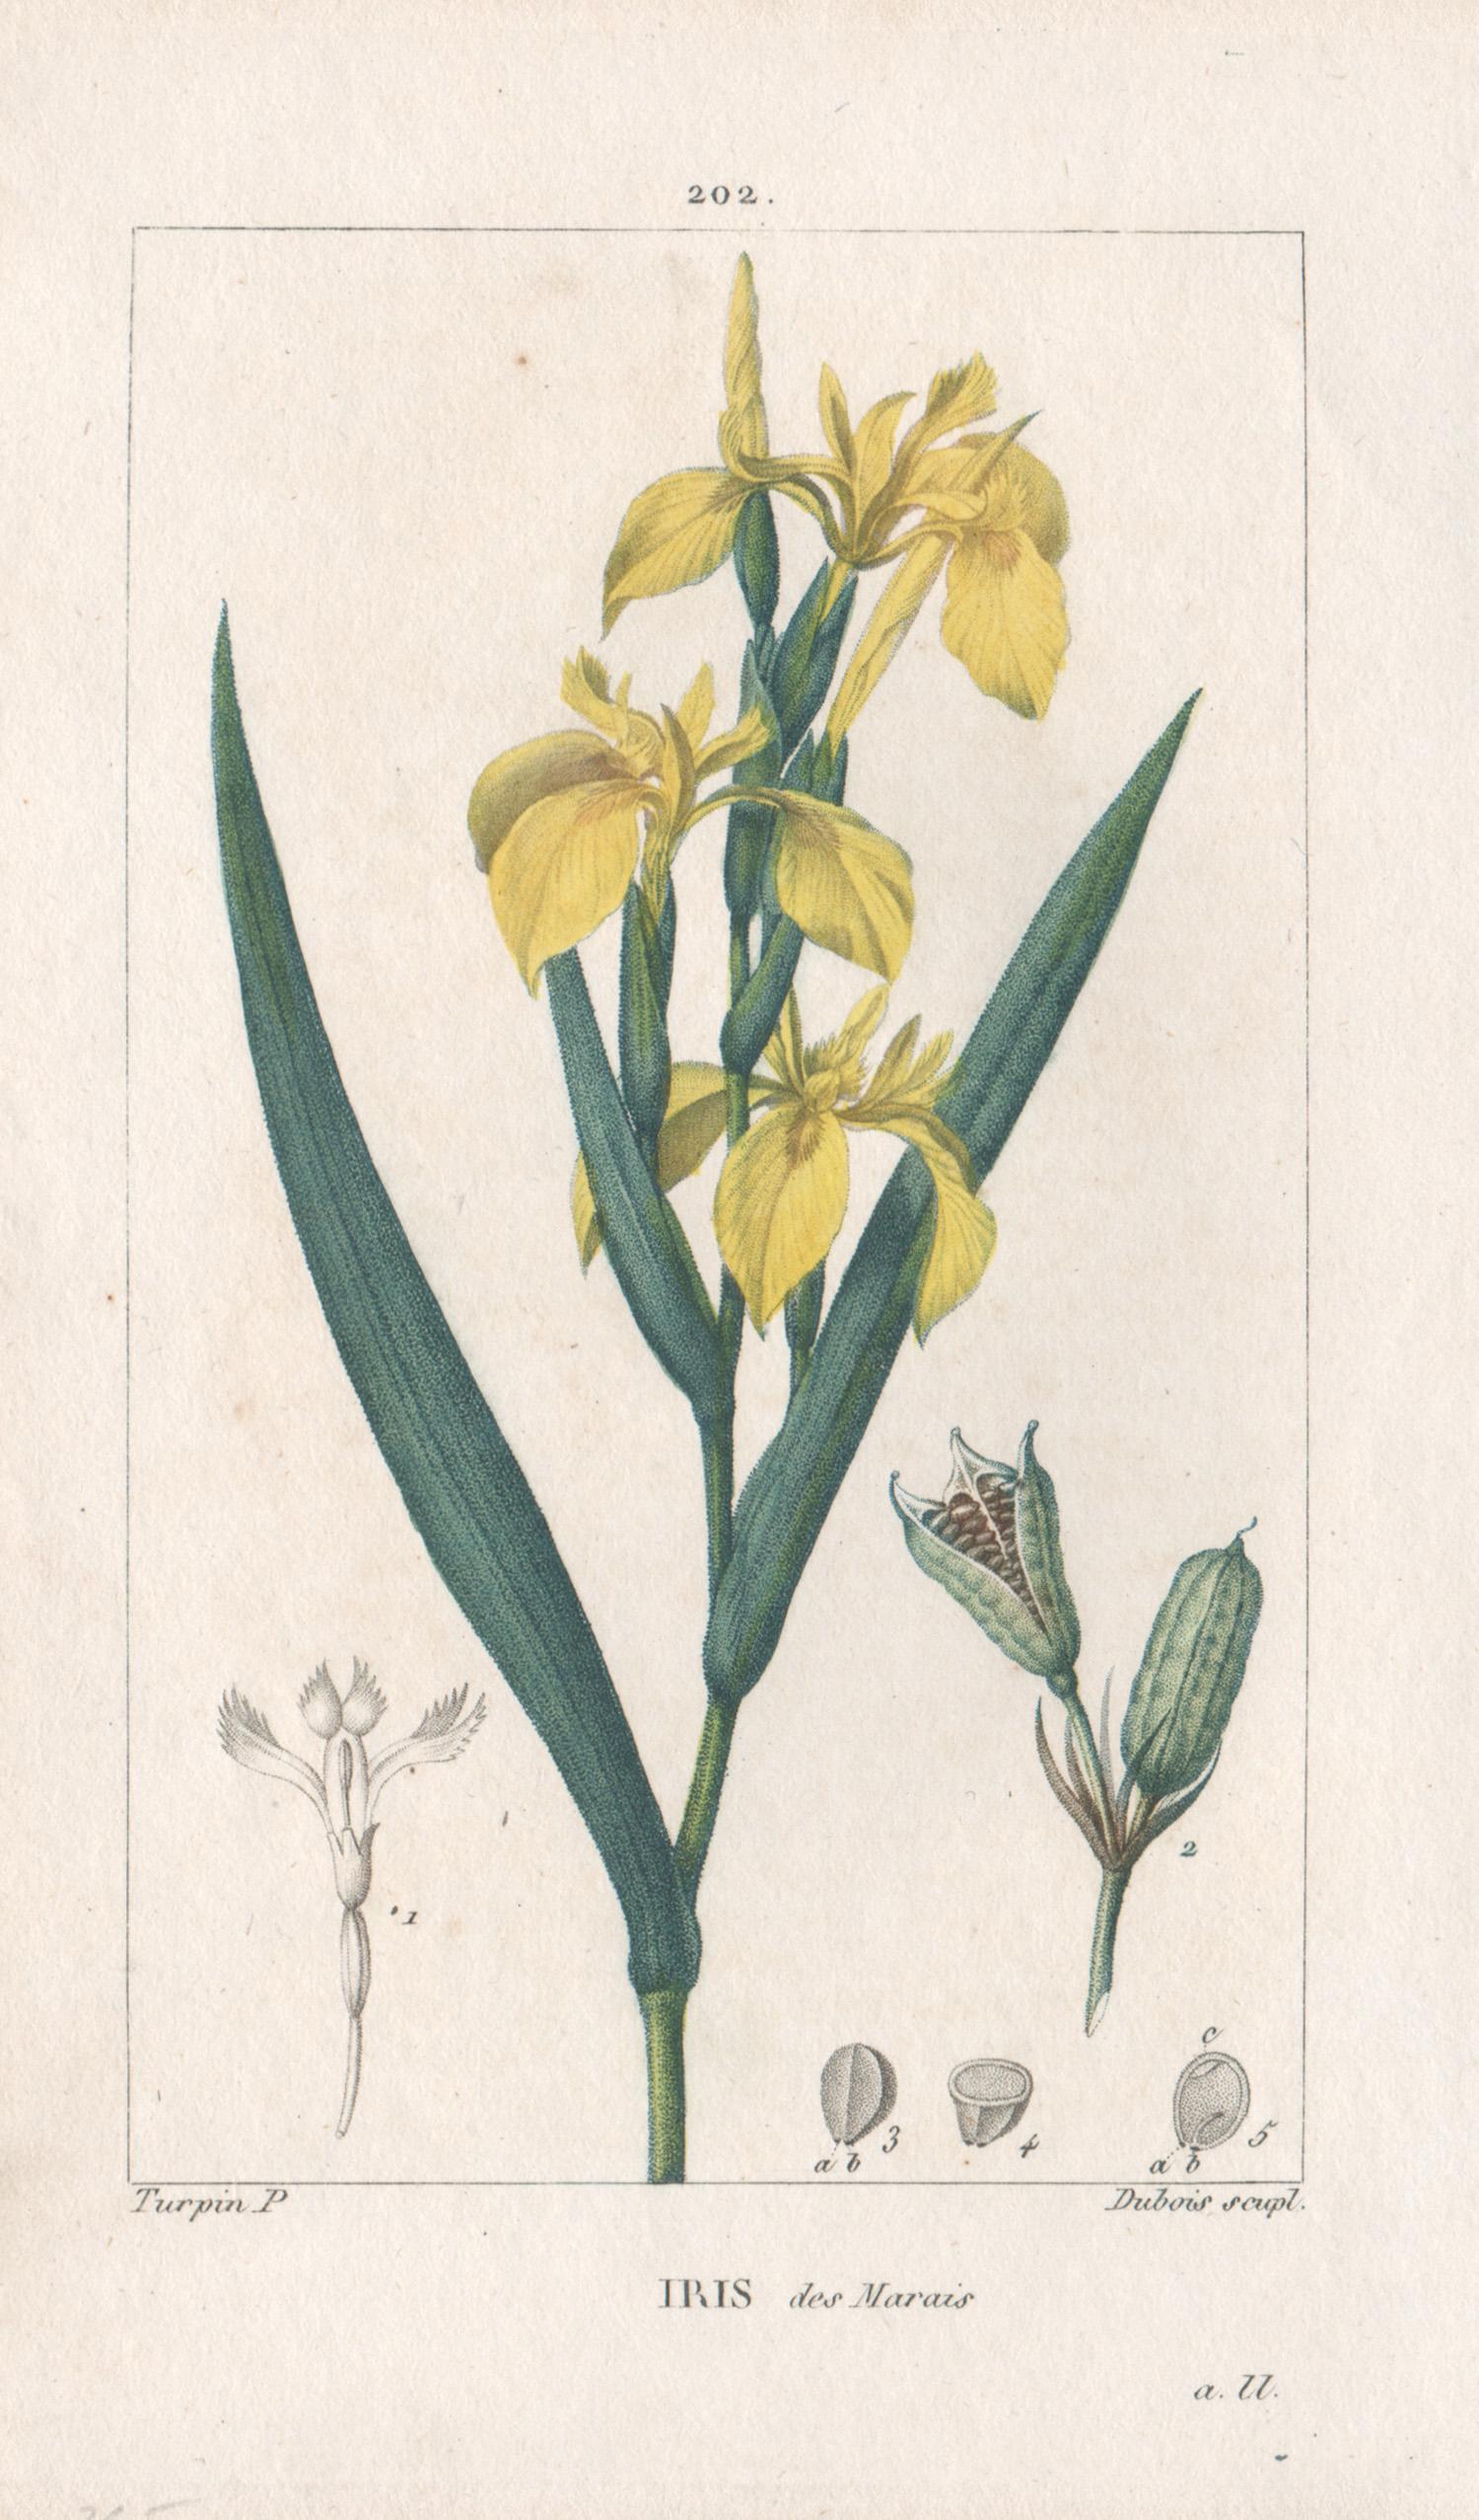 After Pierre Turpin Print - Iris des Marais (Yellow Iris), French botanical herbal flower engraving, 1818